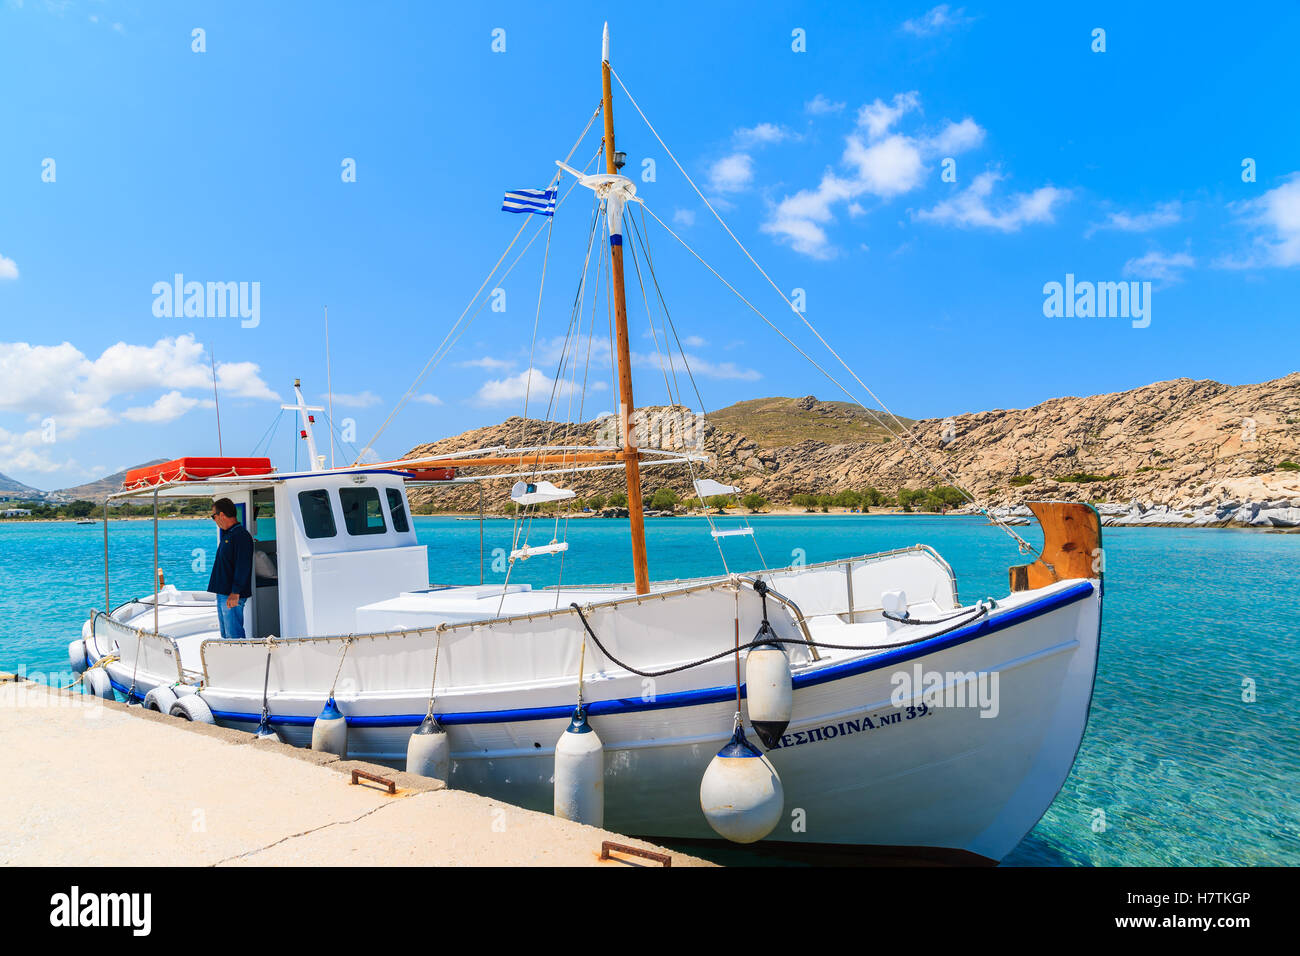 L'île de Paros, GRÈCE - 20 MAI 2016 : pêcheur en bateau de pêche typique de la baie d'amarrage en mer isolée sur l'île de Paros, Grèce. Banque D'Images